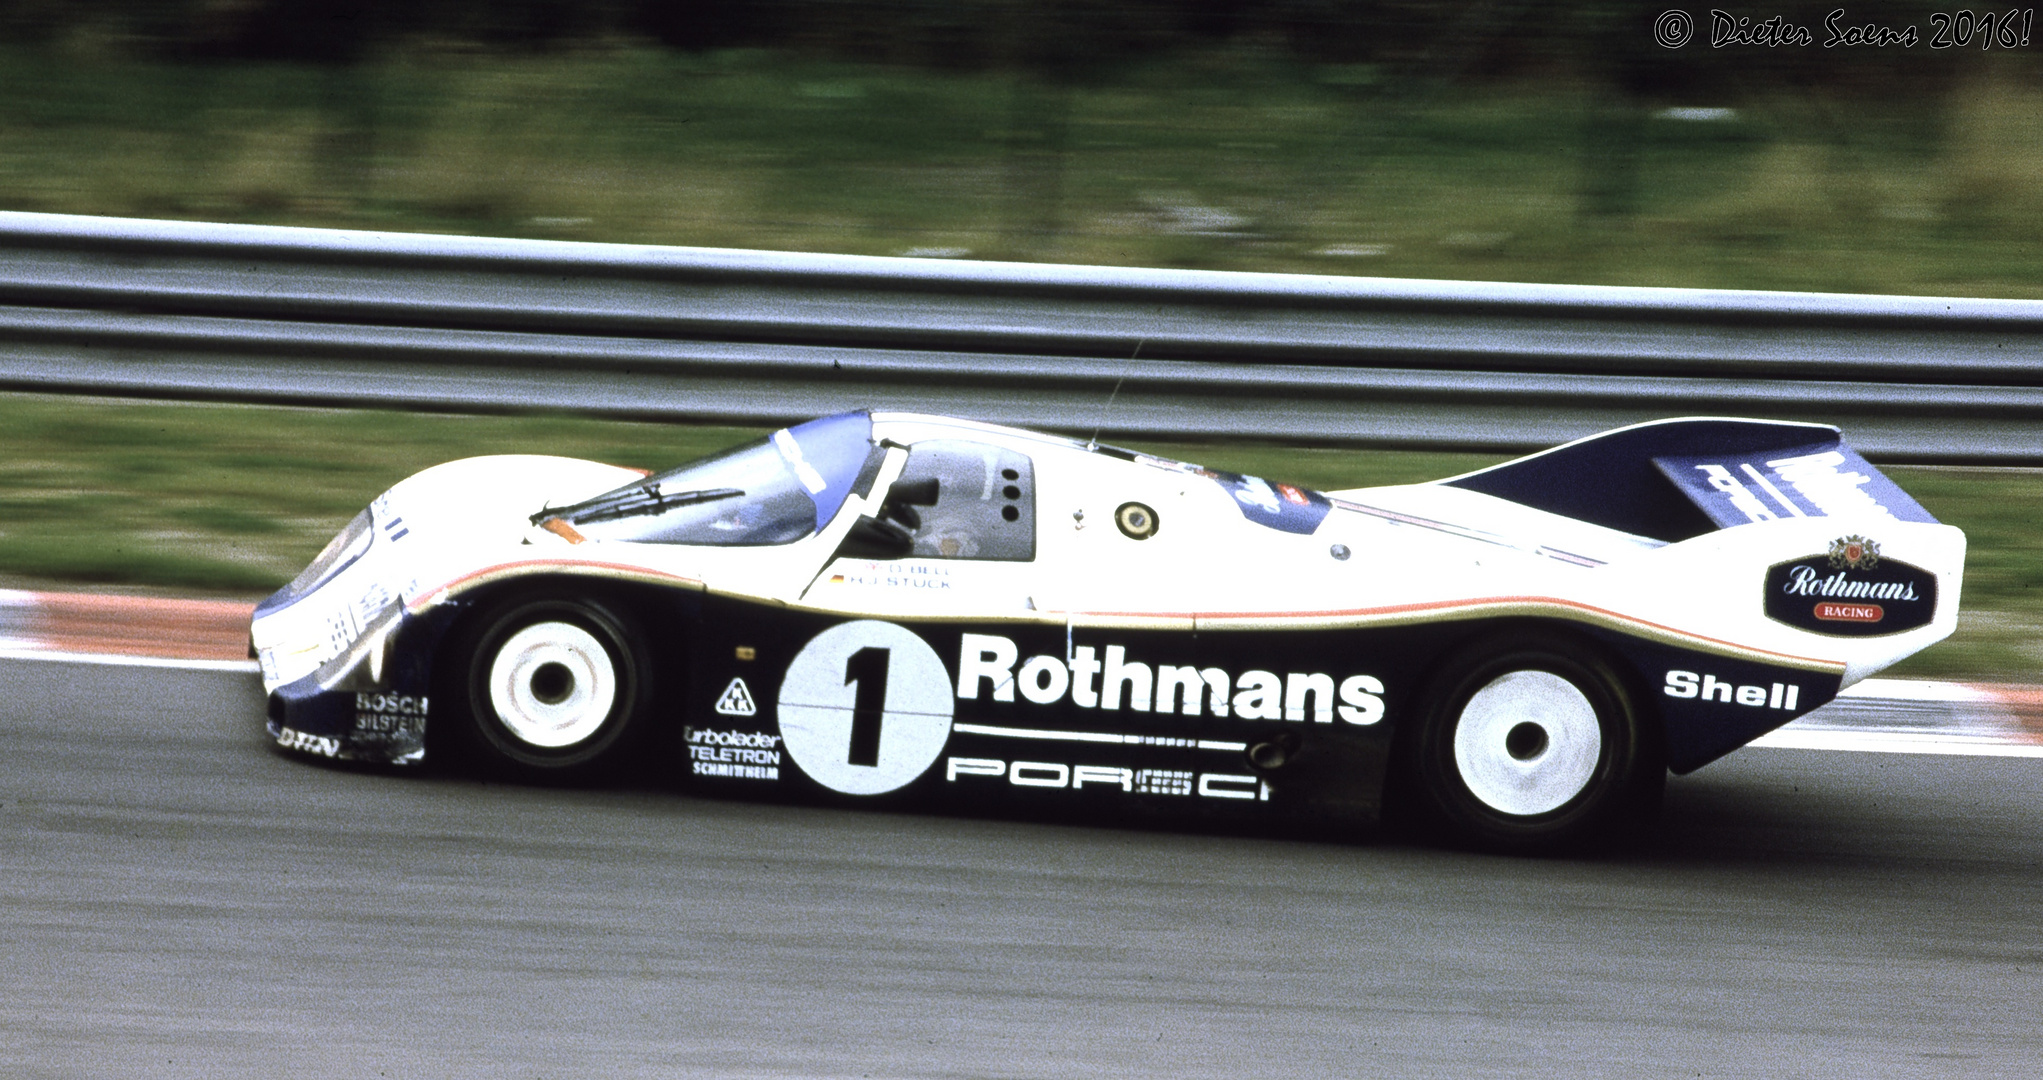 DSC_002231102016  Rothmanns  Porsche 962C #004 Nr.1. Porsche Werkswagen Mag. A. Nr.22.